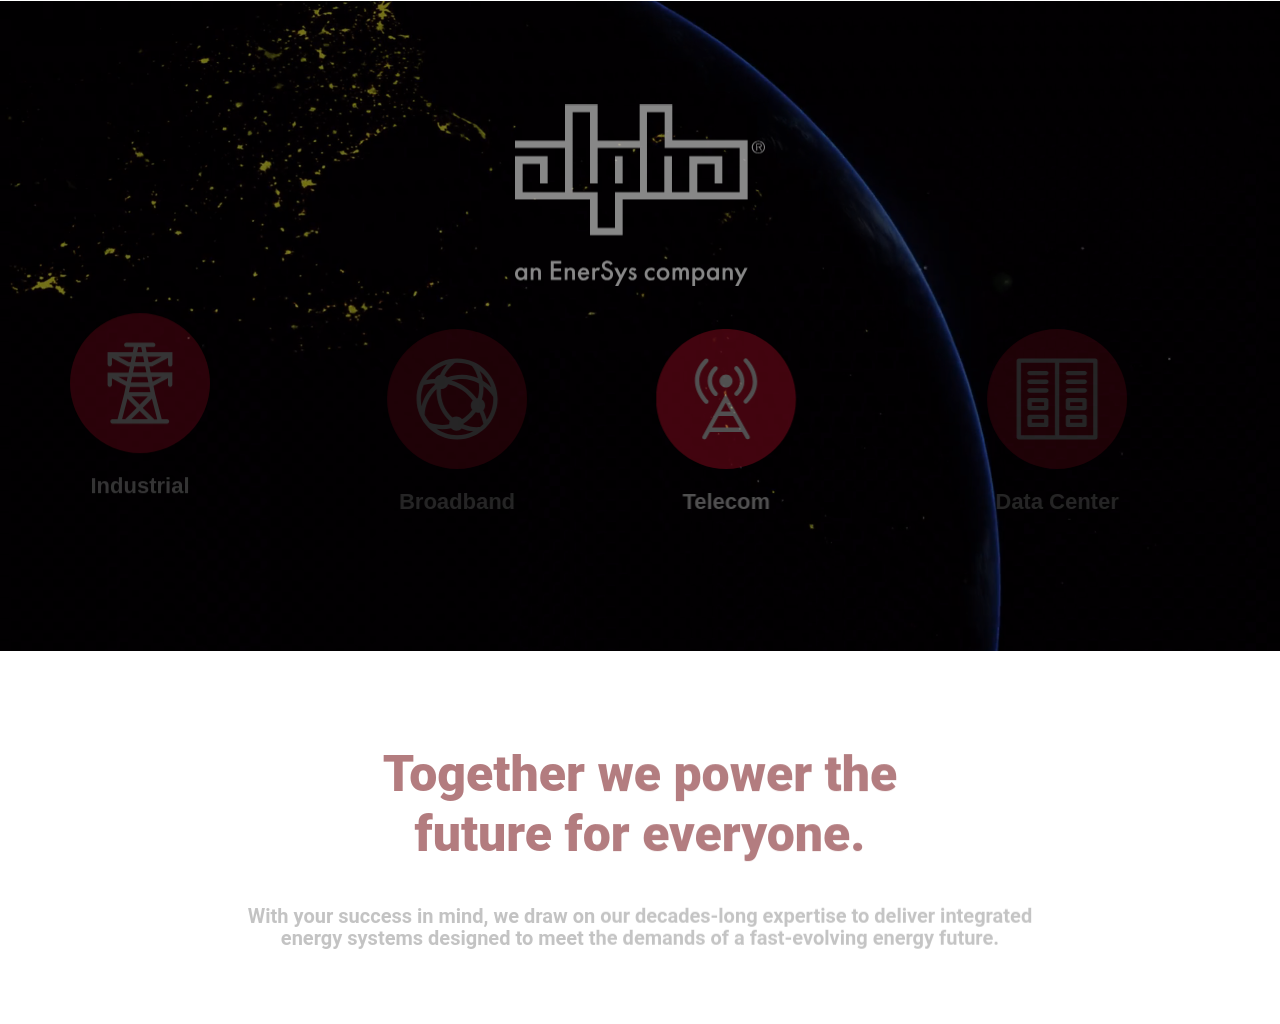 alpha.com